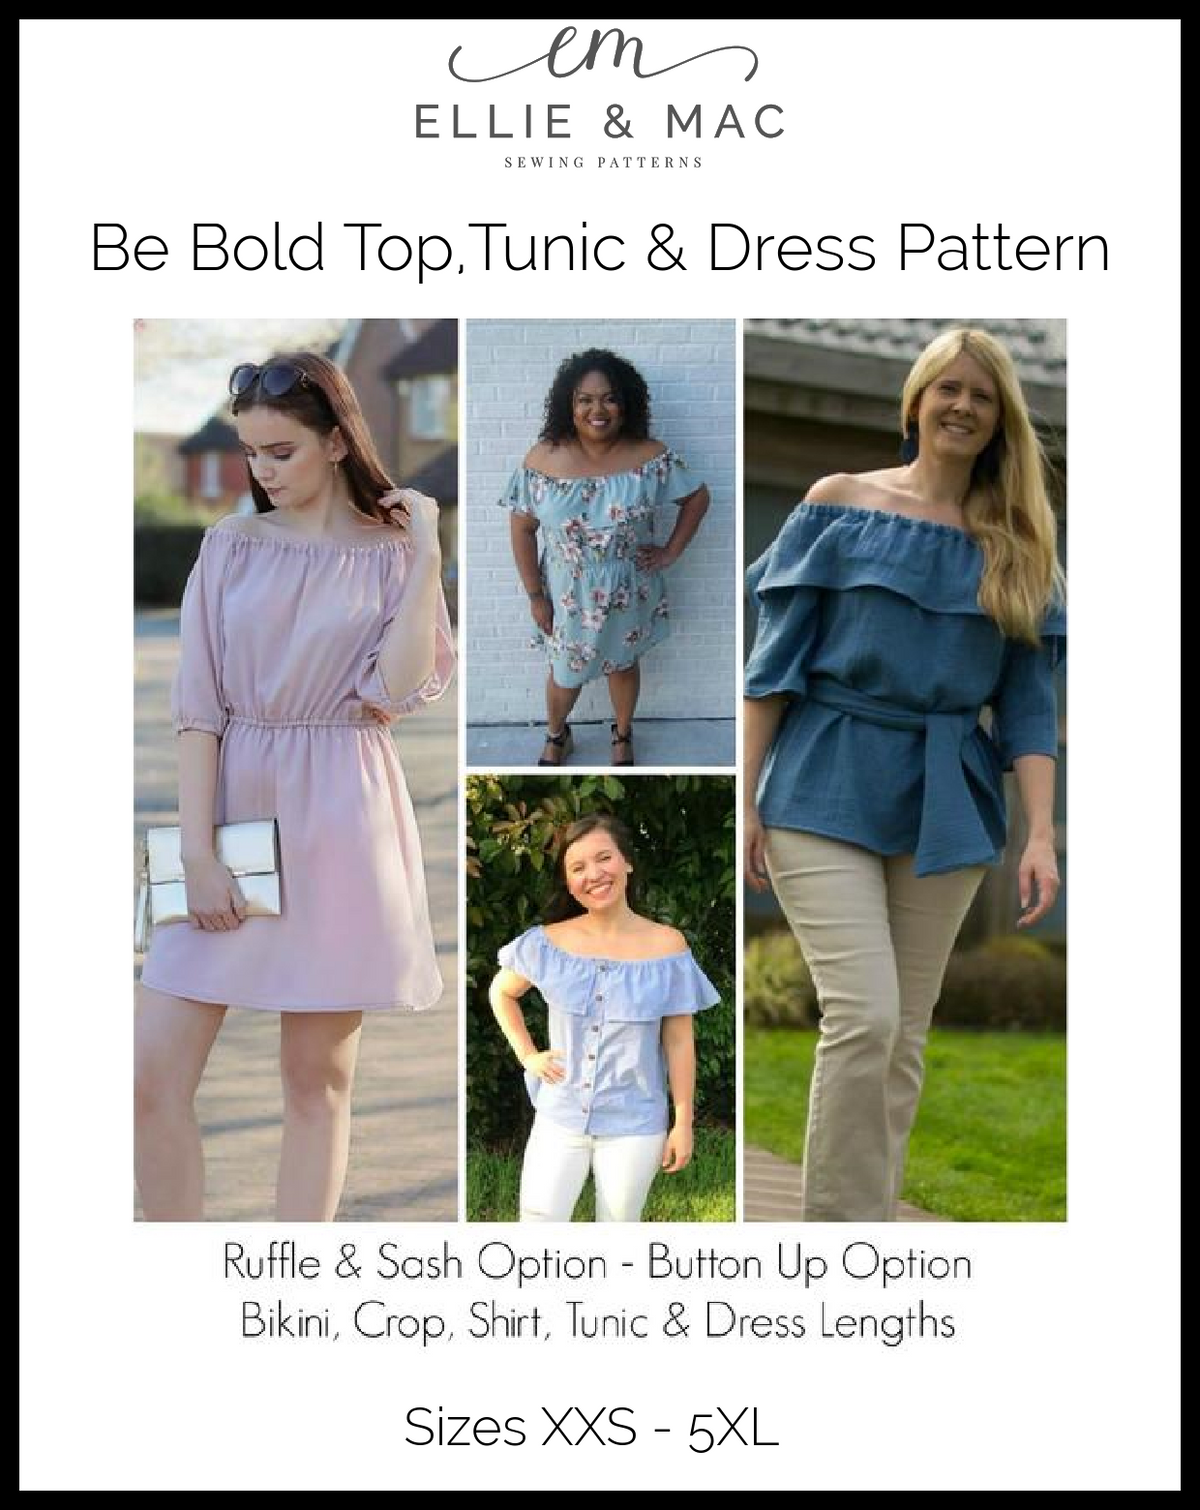 Be Bold Top, Tunic & Dress Pattern